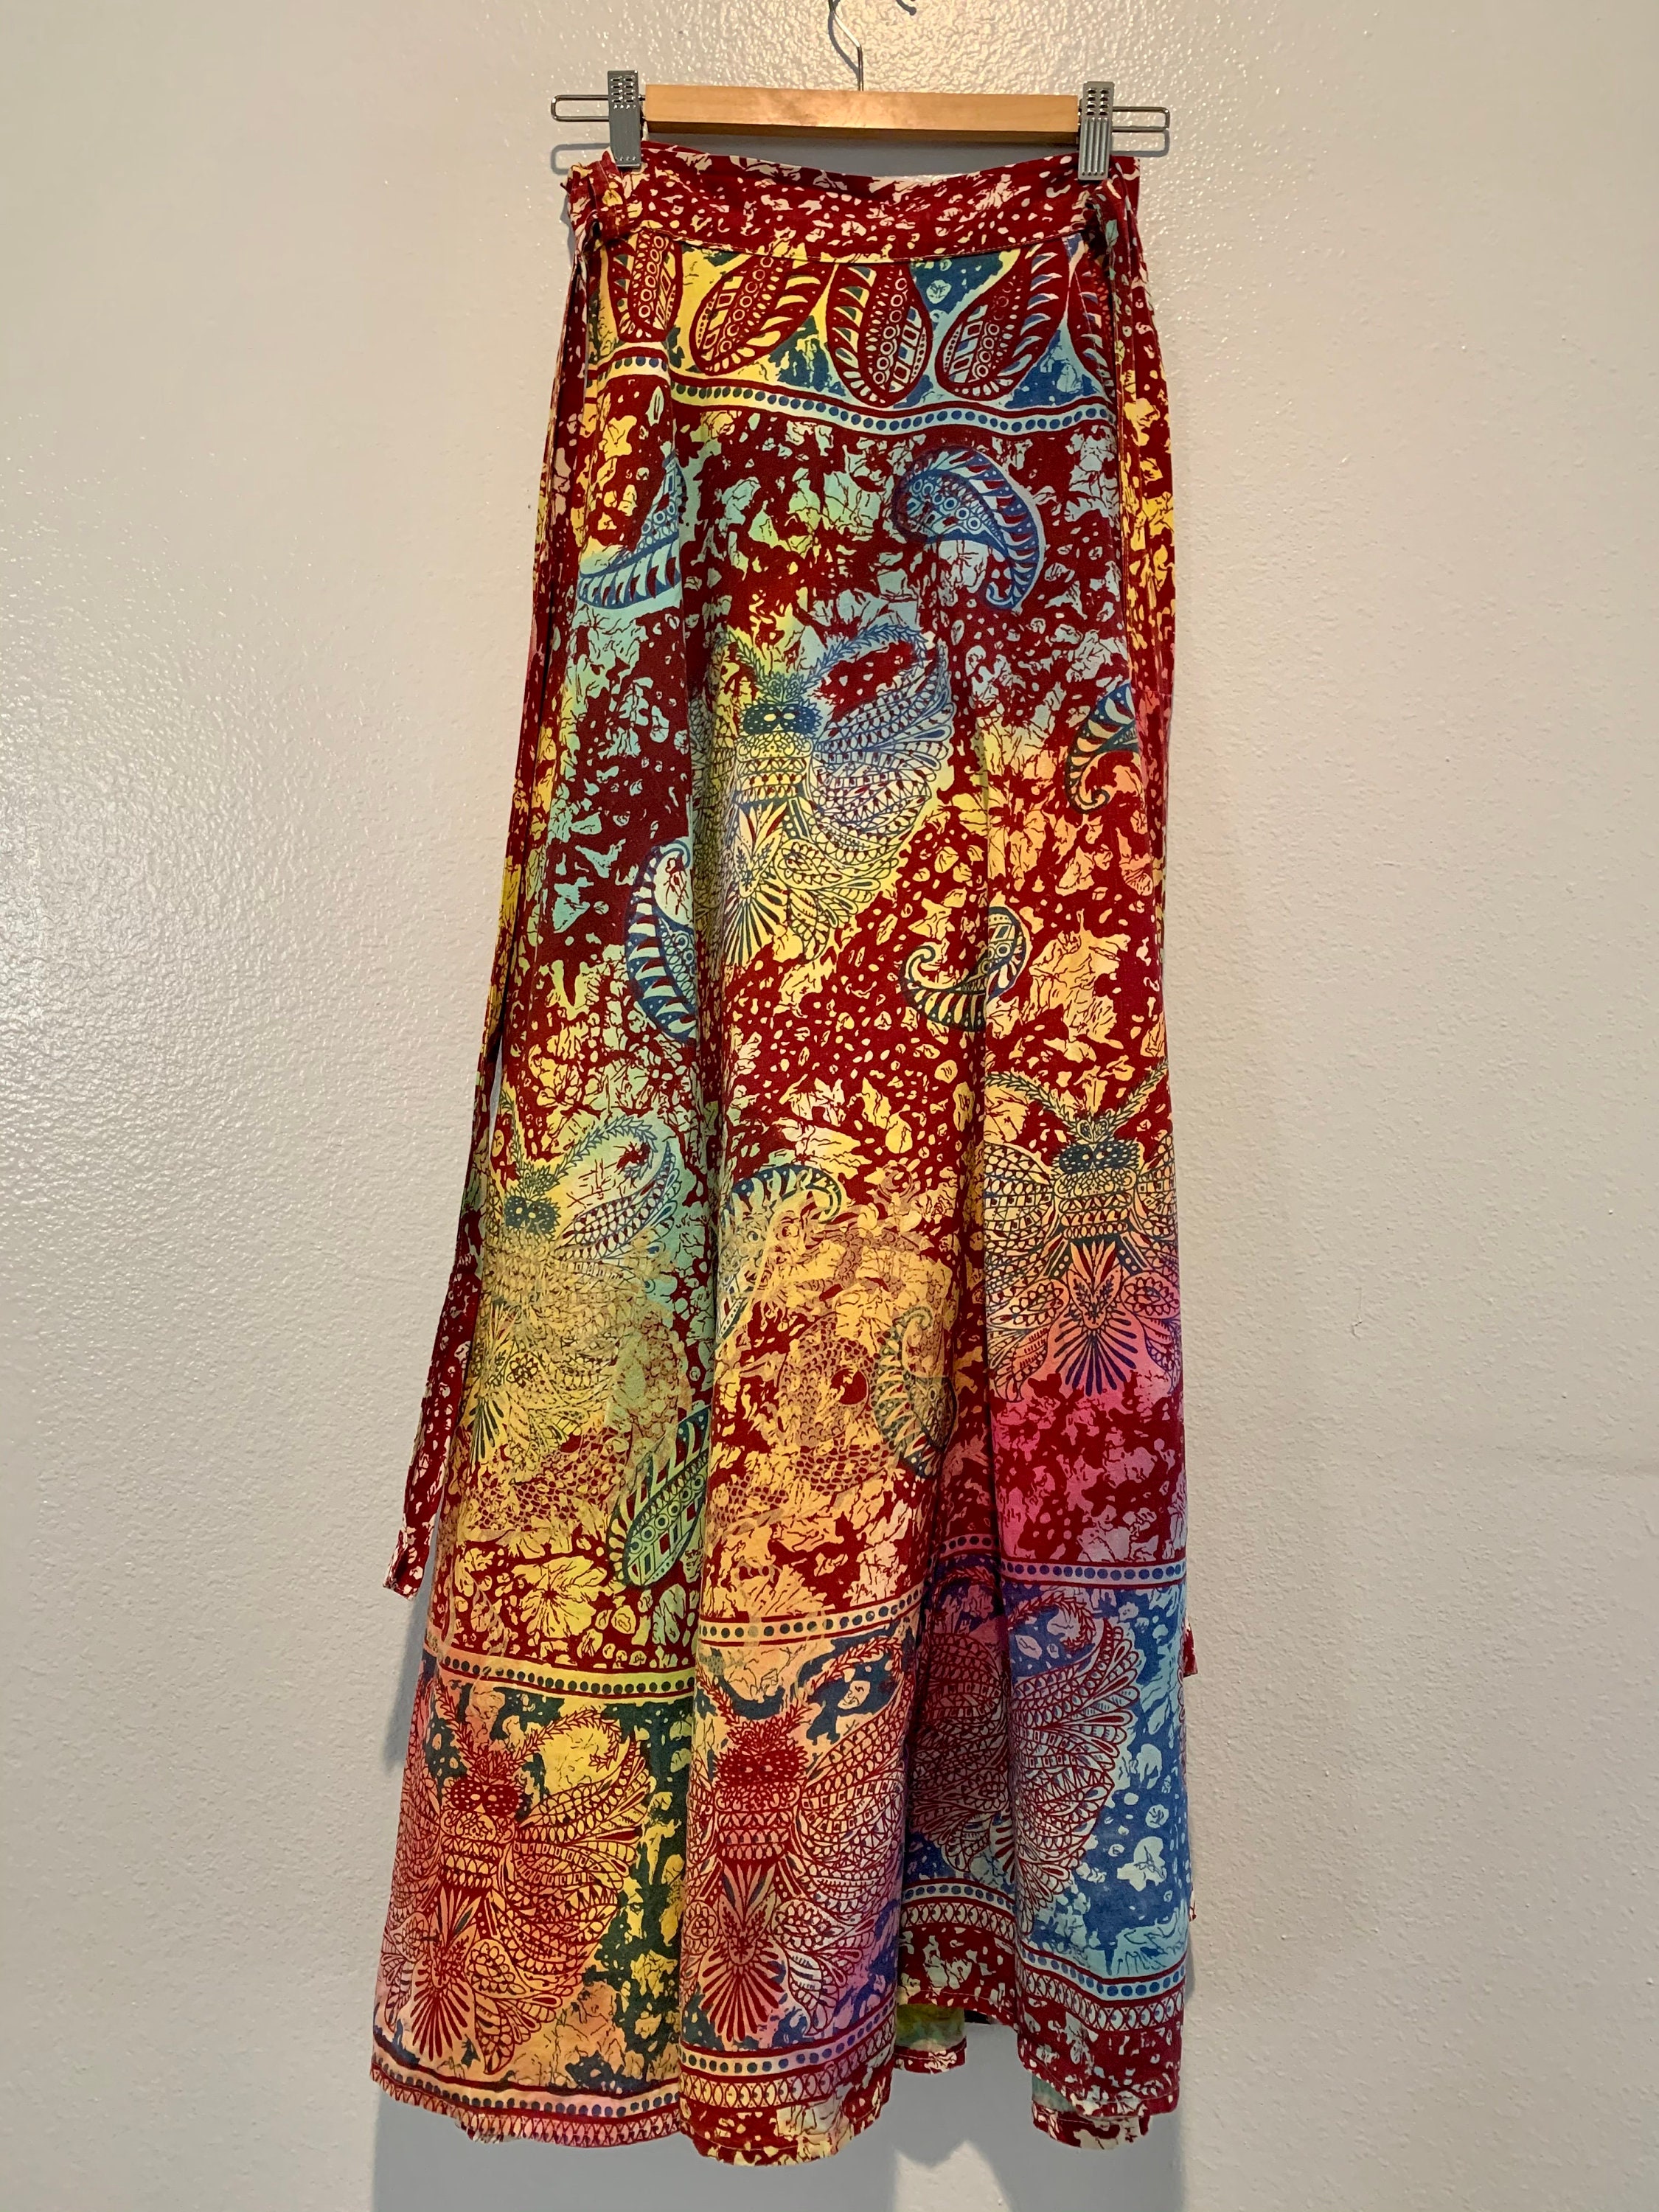 Circa 2000 Tie Dye Wrap Skirt | Etsy